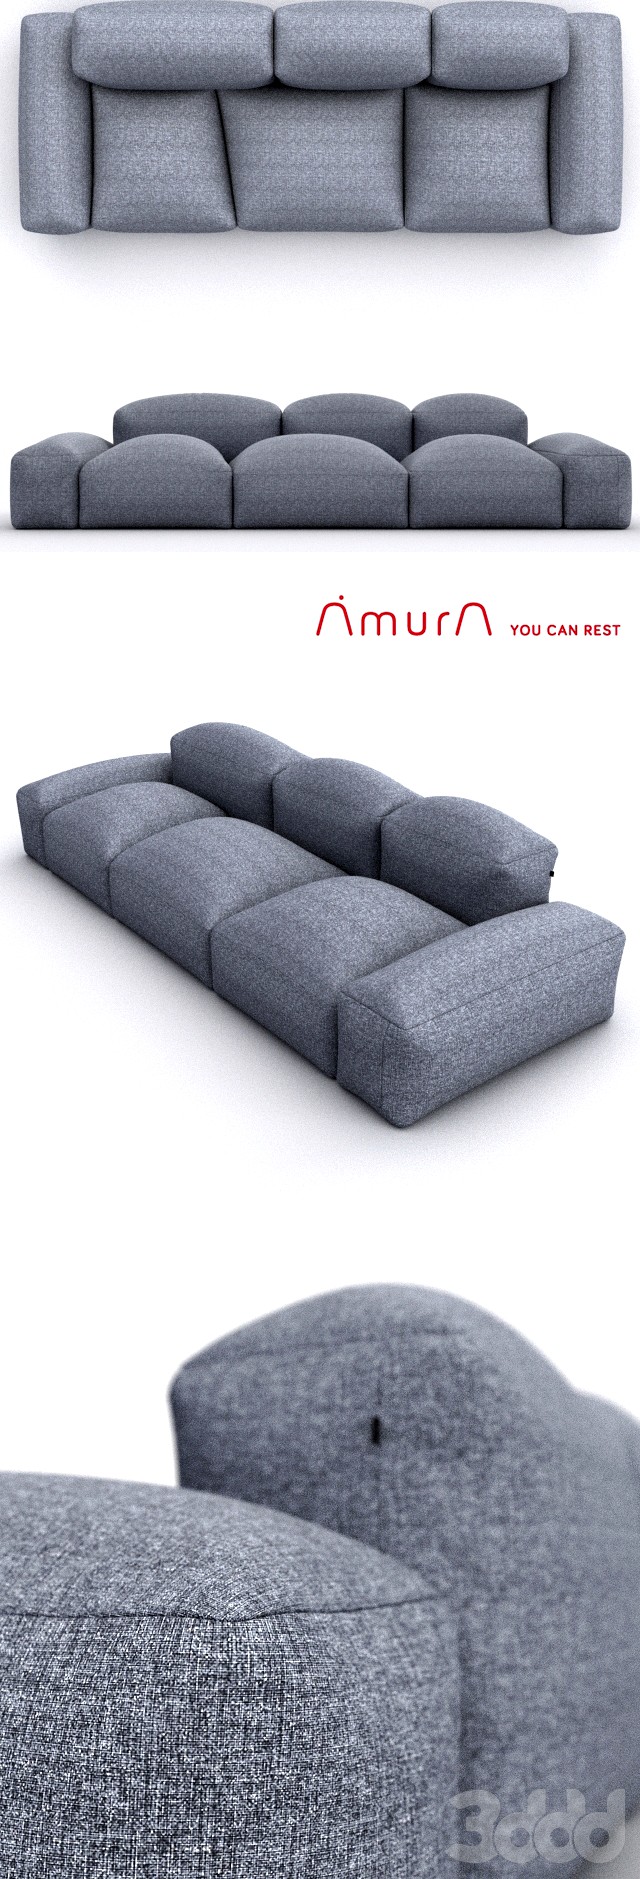 Amura Lapis couch AM001 296